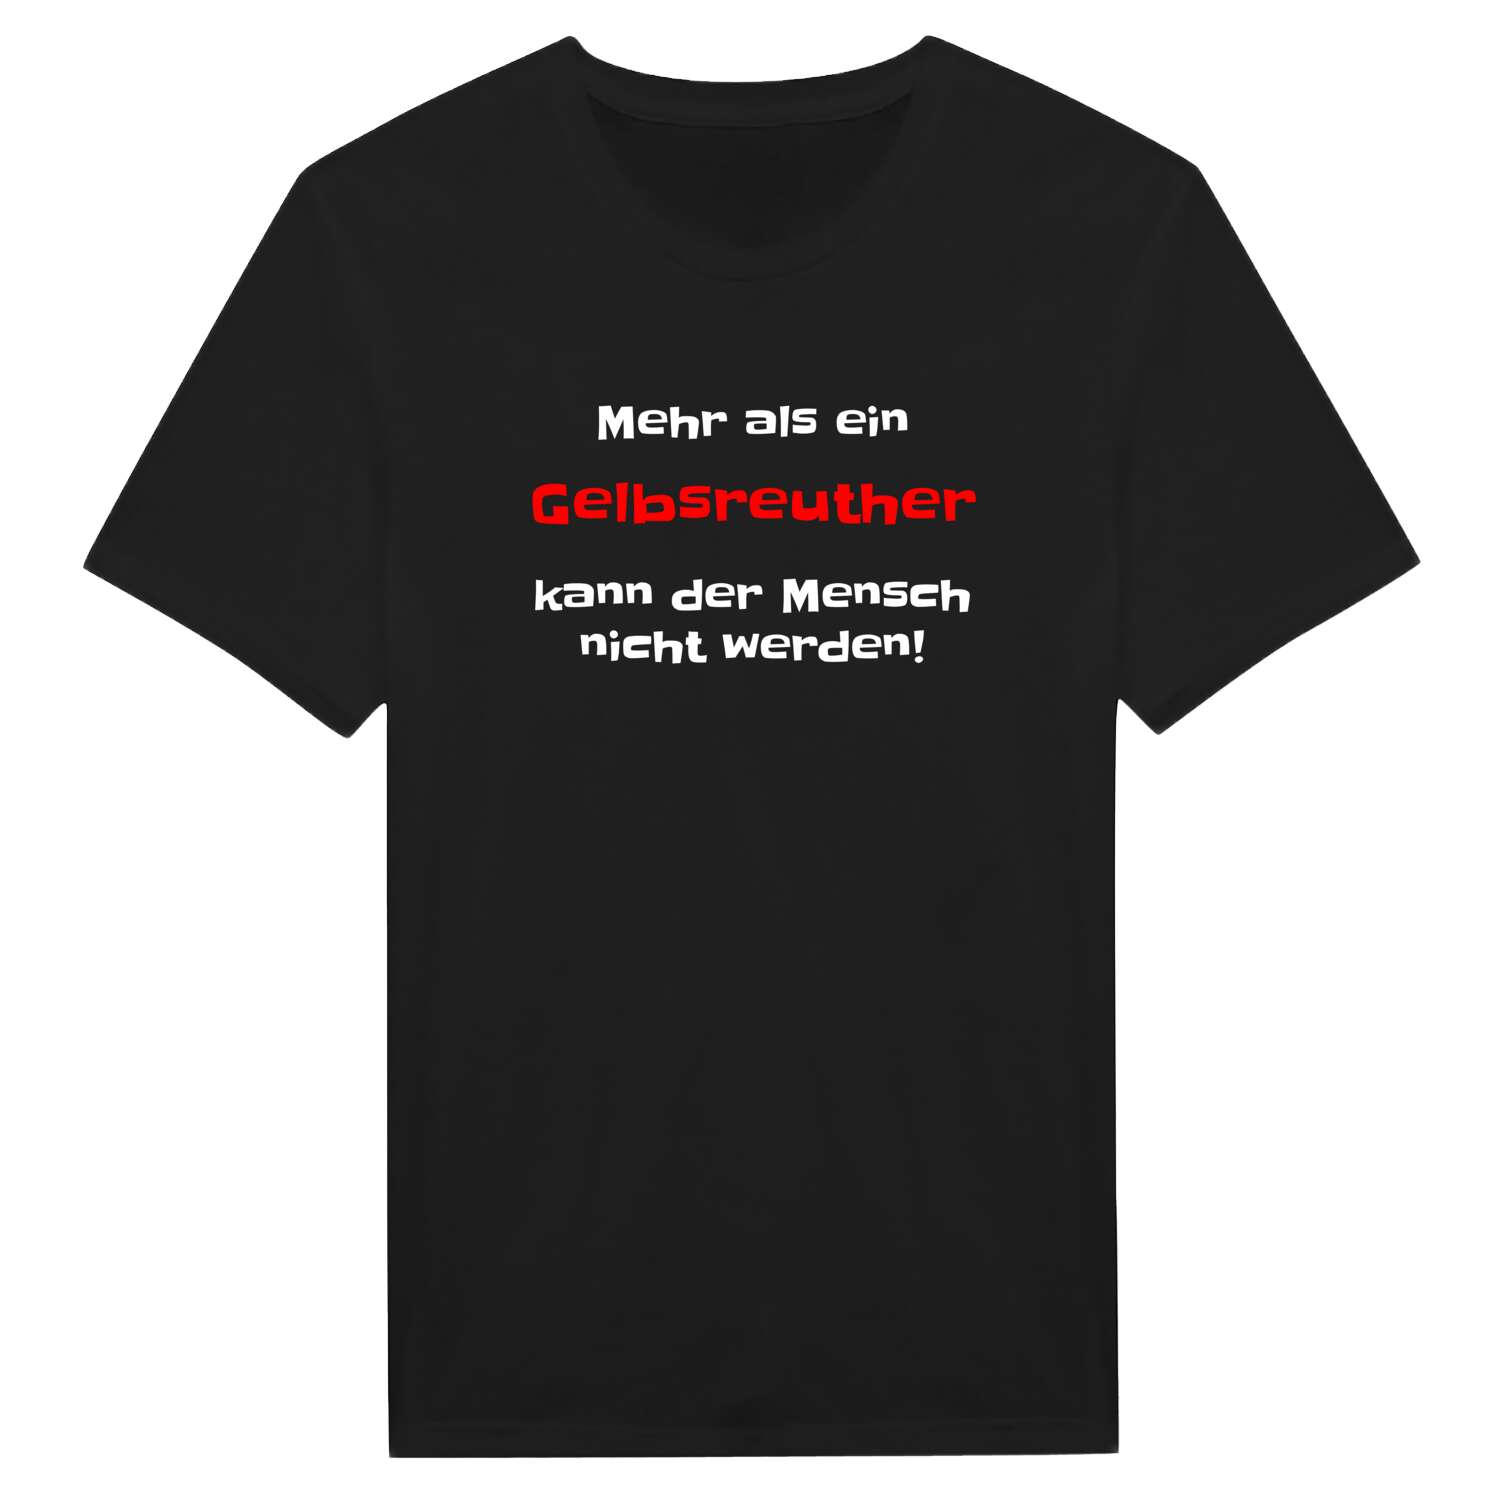 Gelbsreuth T-Shirt »Mehr als ein«